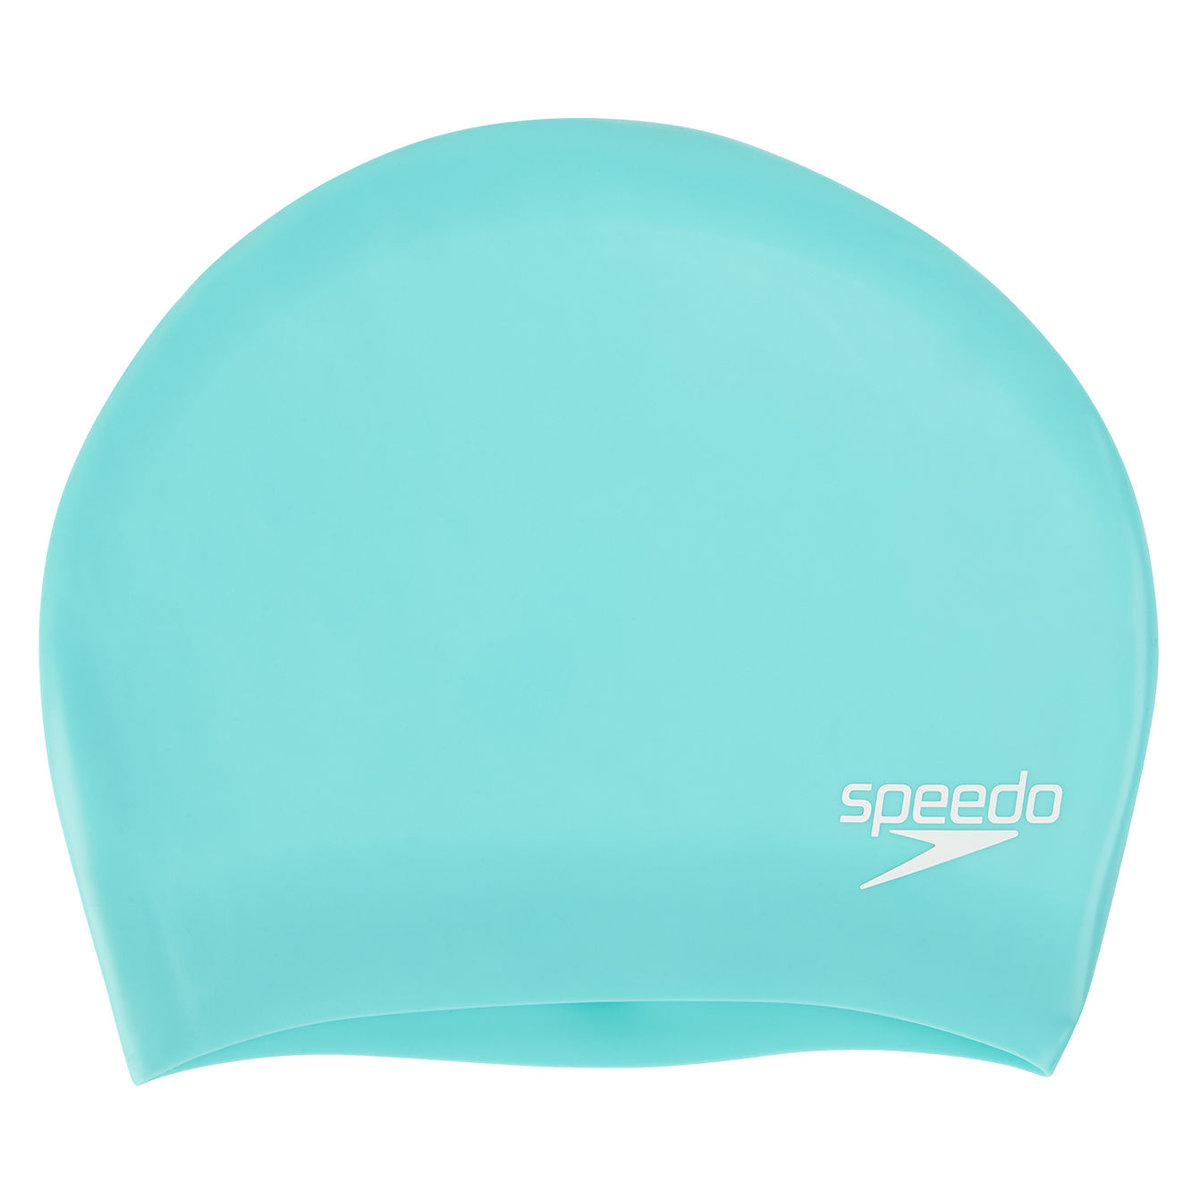 Speedo długie włosy silikonowy czepek pływacki miętowy zielony 8-06168B961